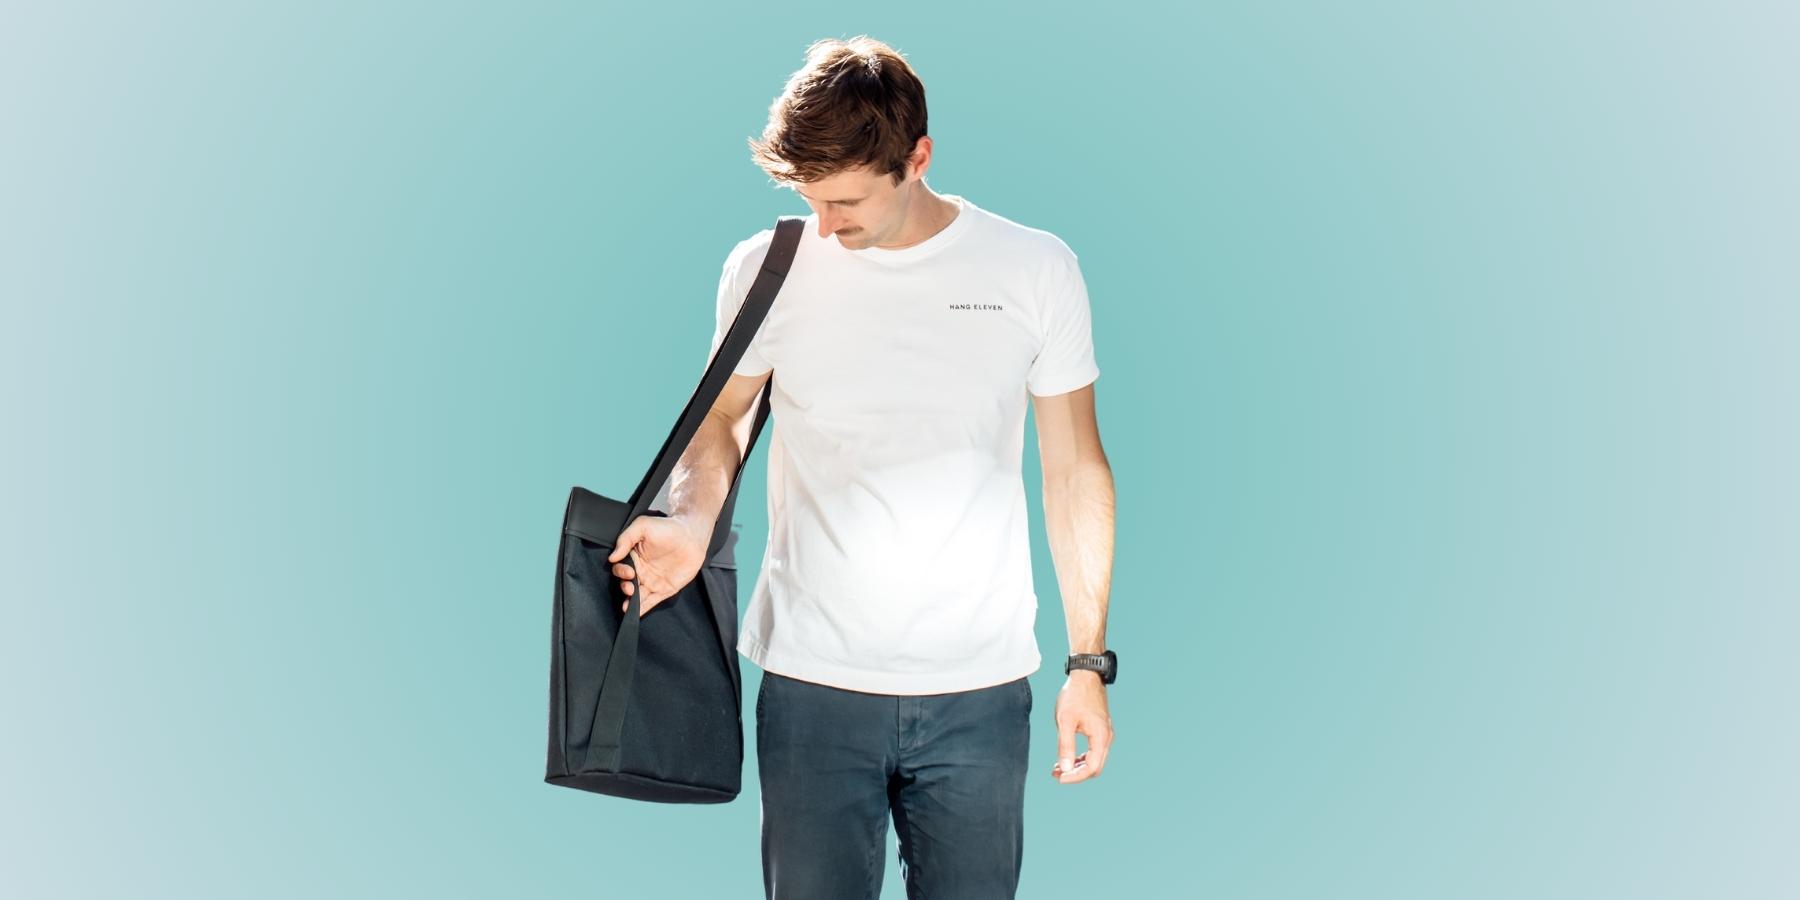 Mann mit minimalistischer Rucksack-Tasche